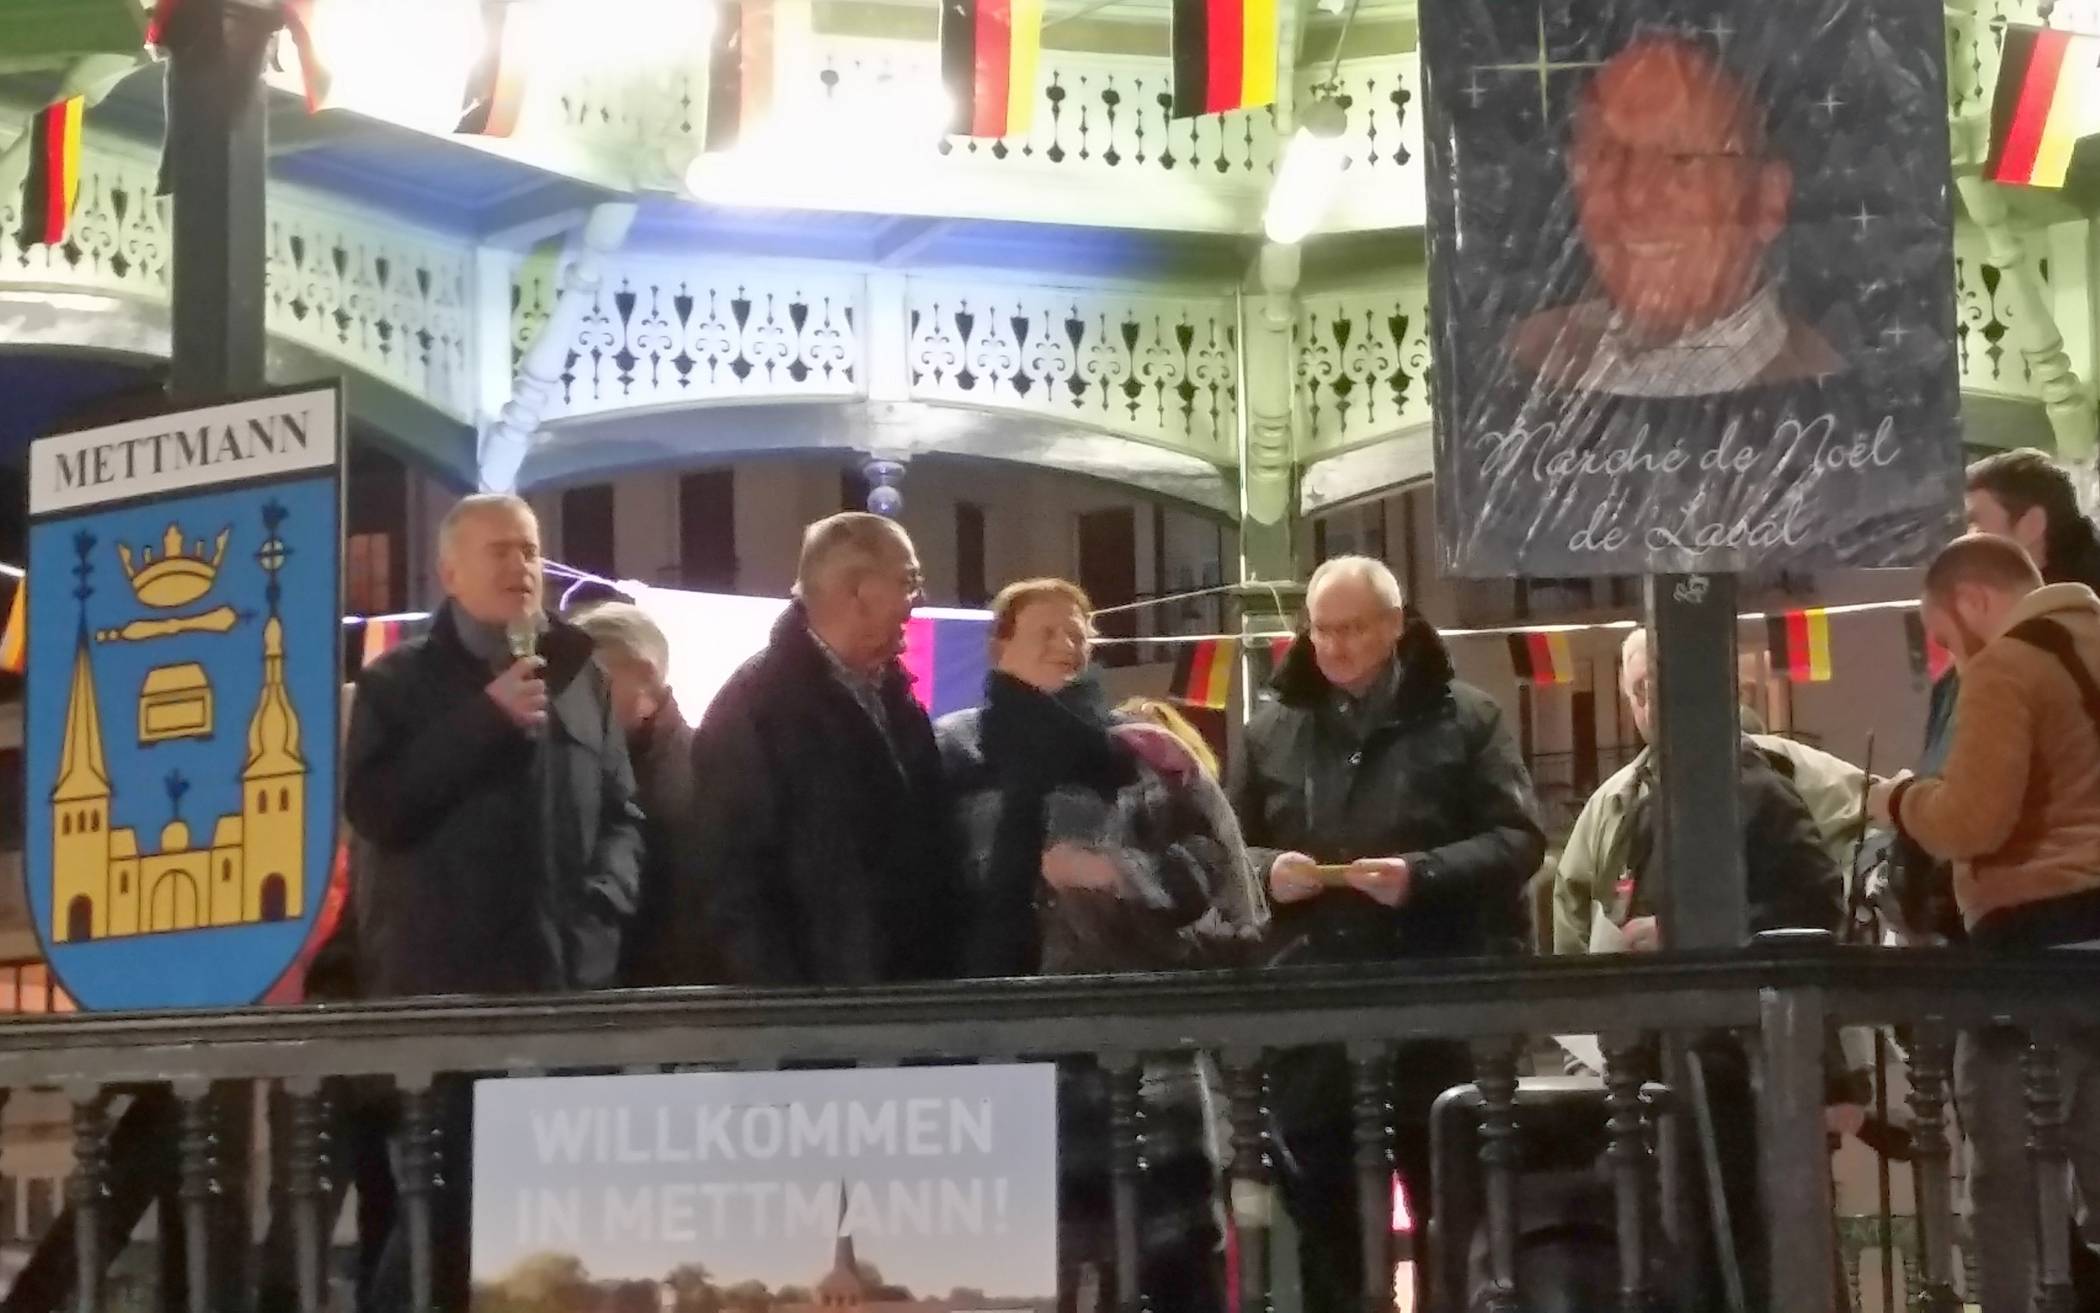  Lavals Bürgermeister Francois Zocchetto (l.) würdigte die Verdienste Peter Langbehns (2. v. l.) während der Eröffnung des Weihnachtsmarktes am 12. Dezember.  